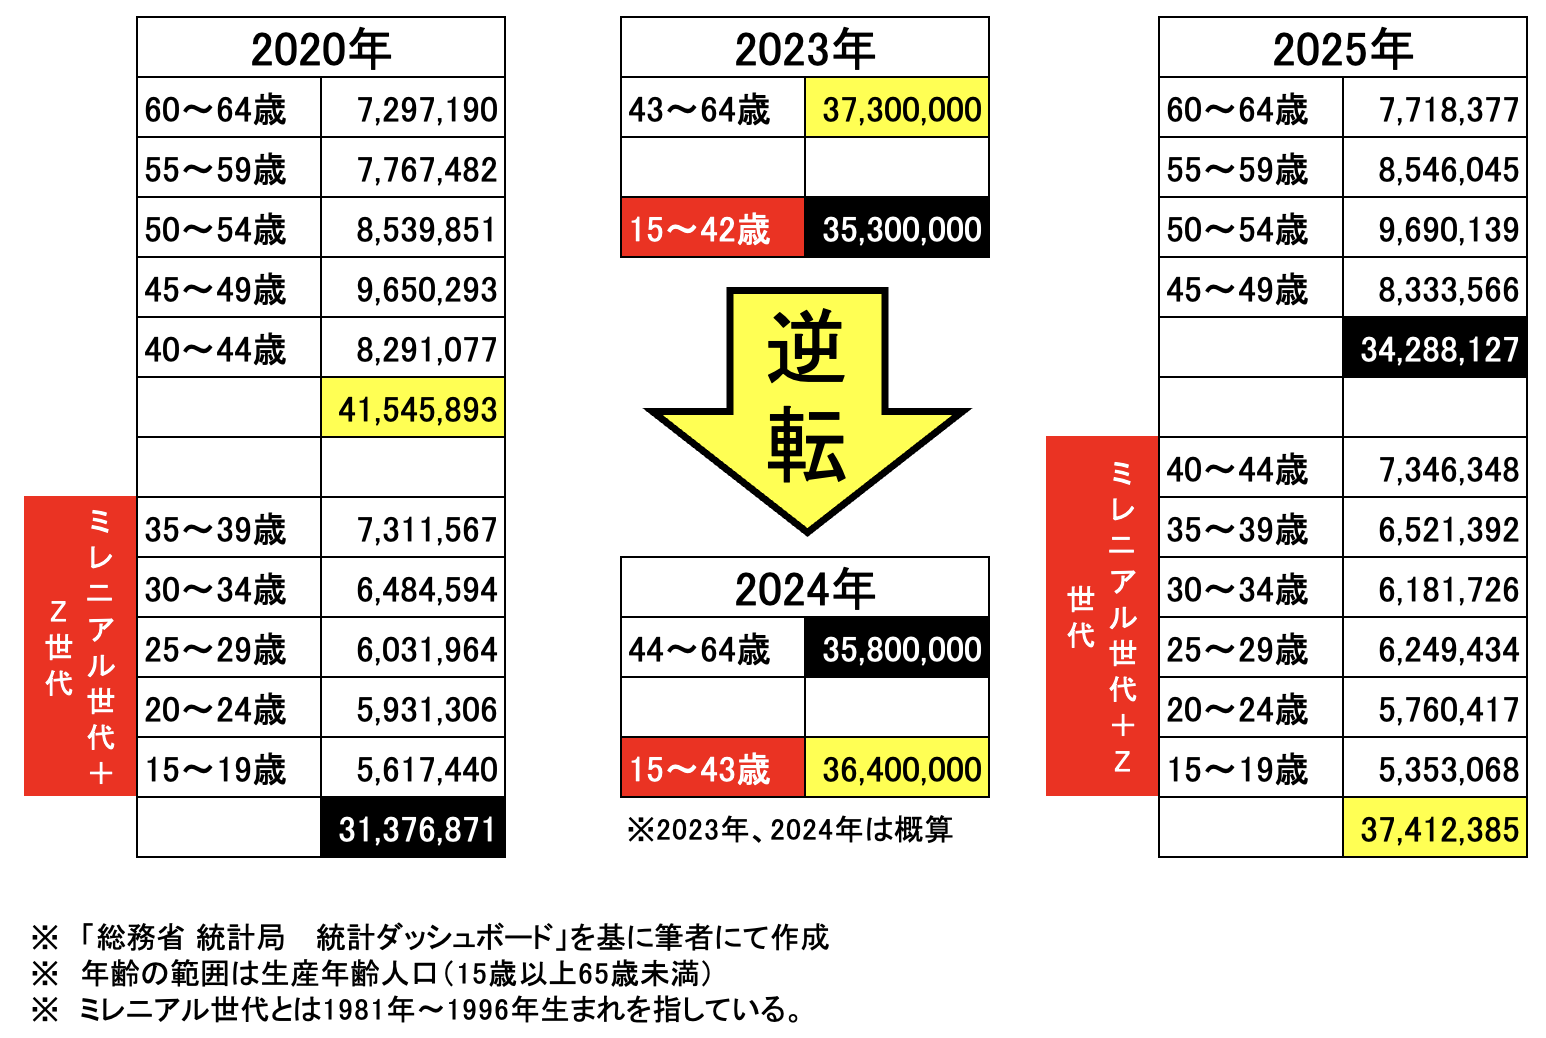 図解：日本の生産年齢人口における「ミレニアル世代＋Z世代」の比率の変化